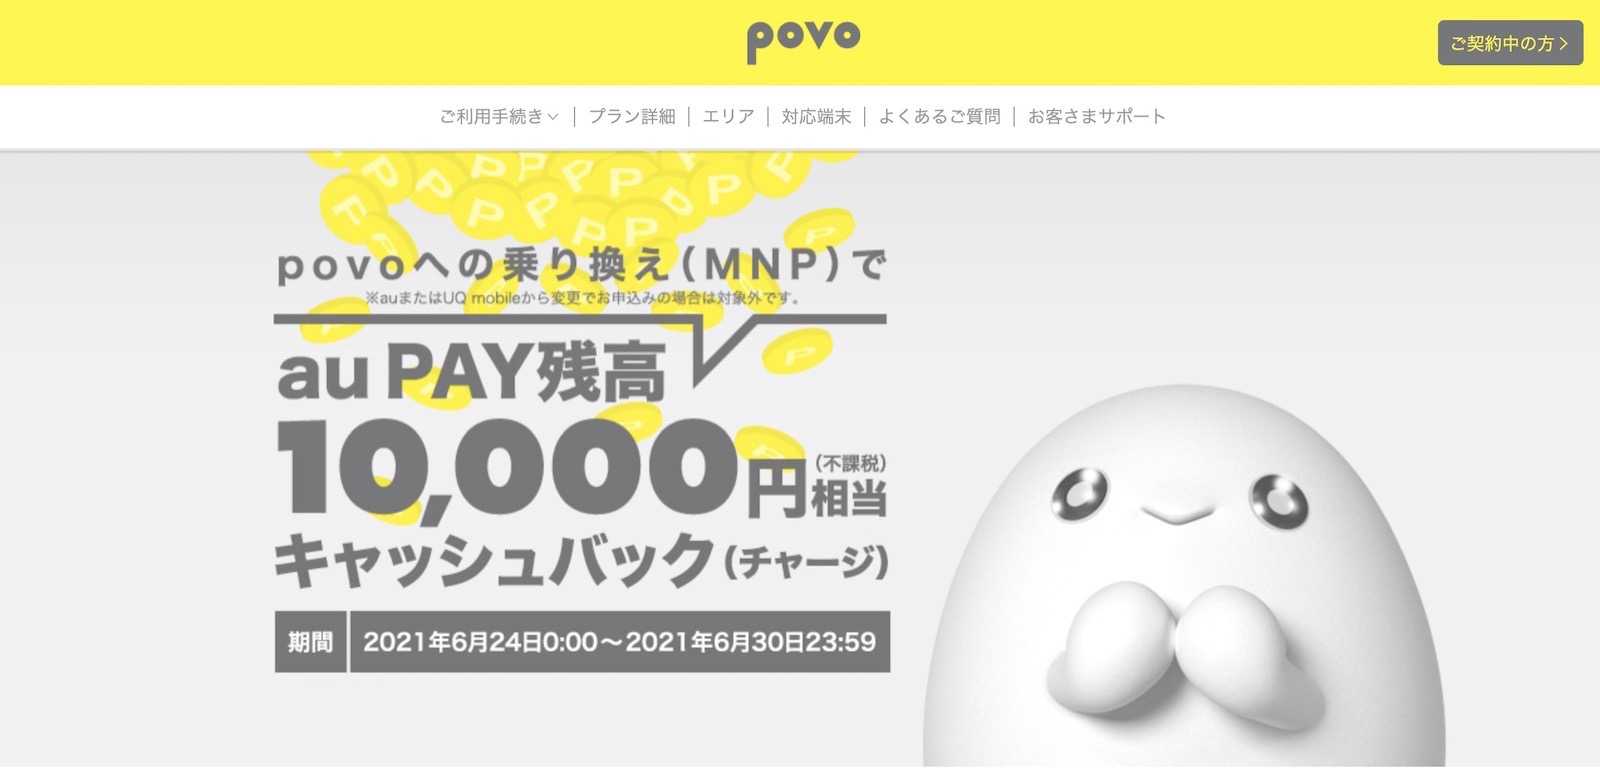 Povo campaign